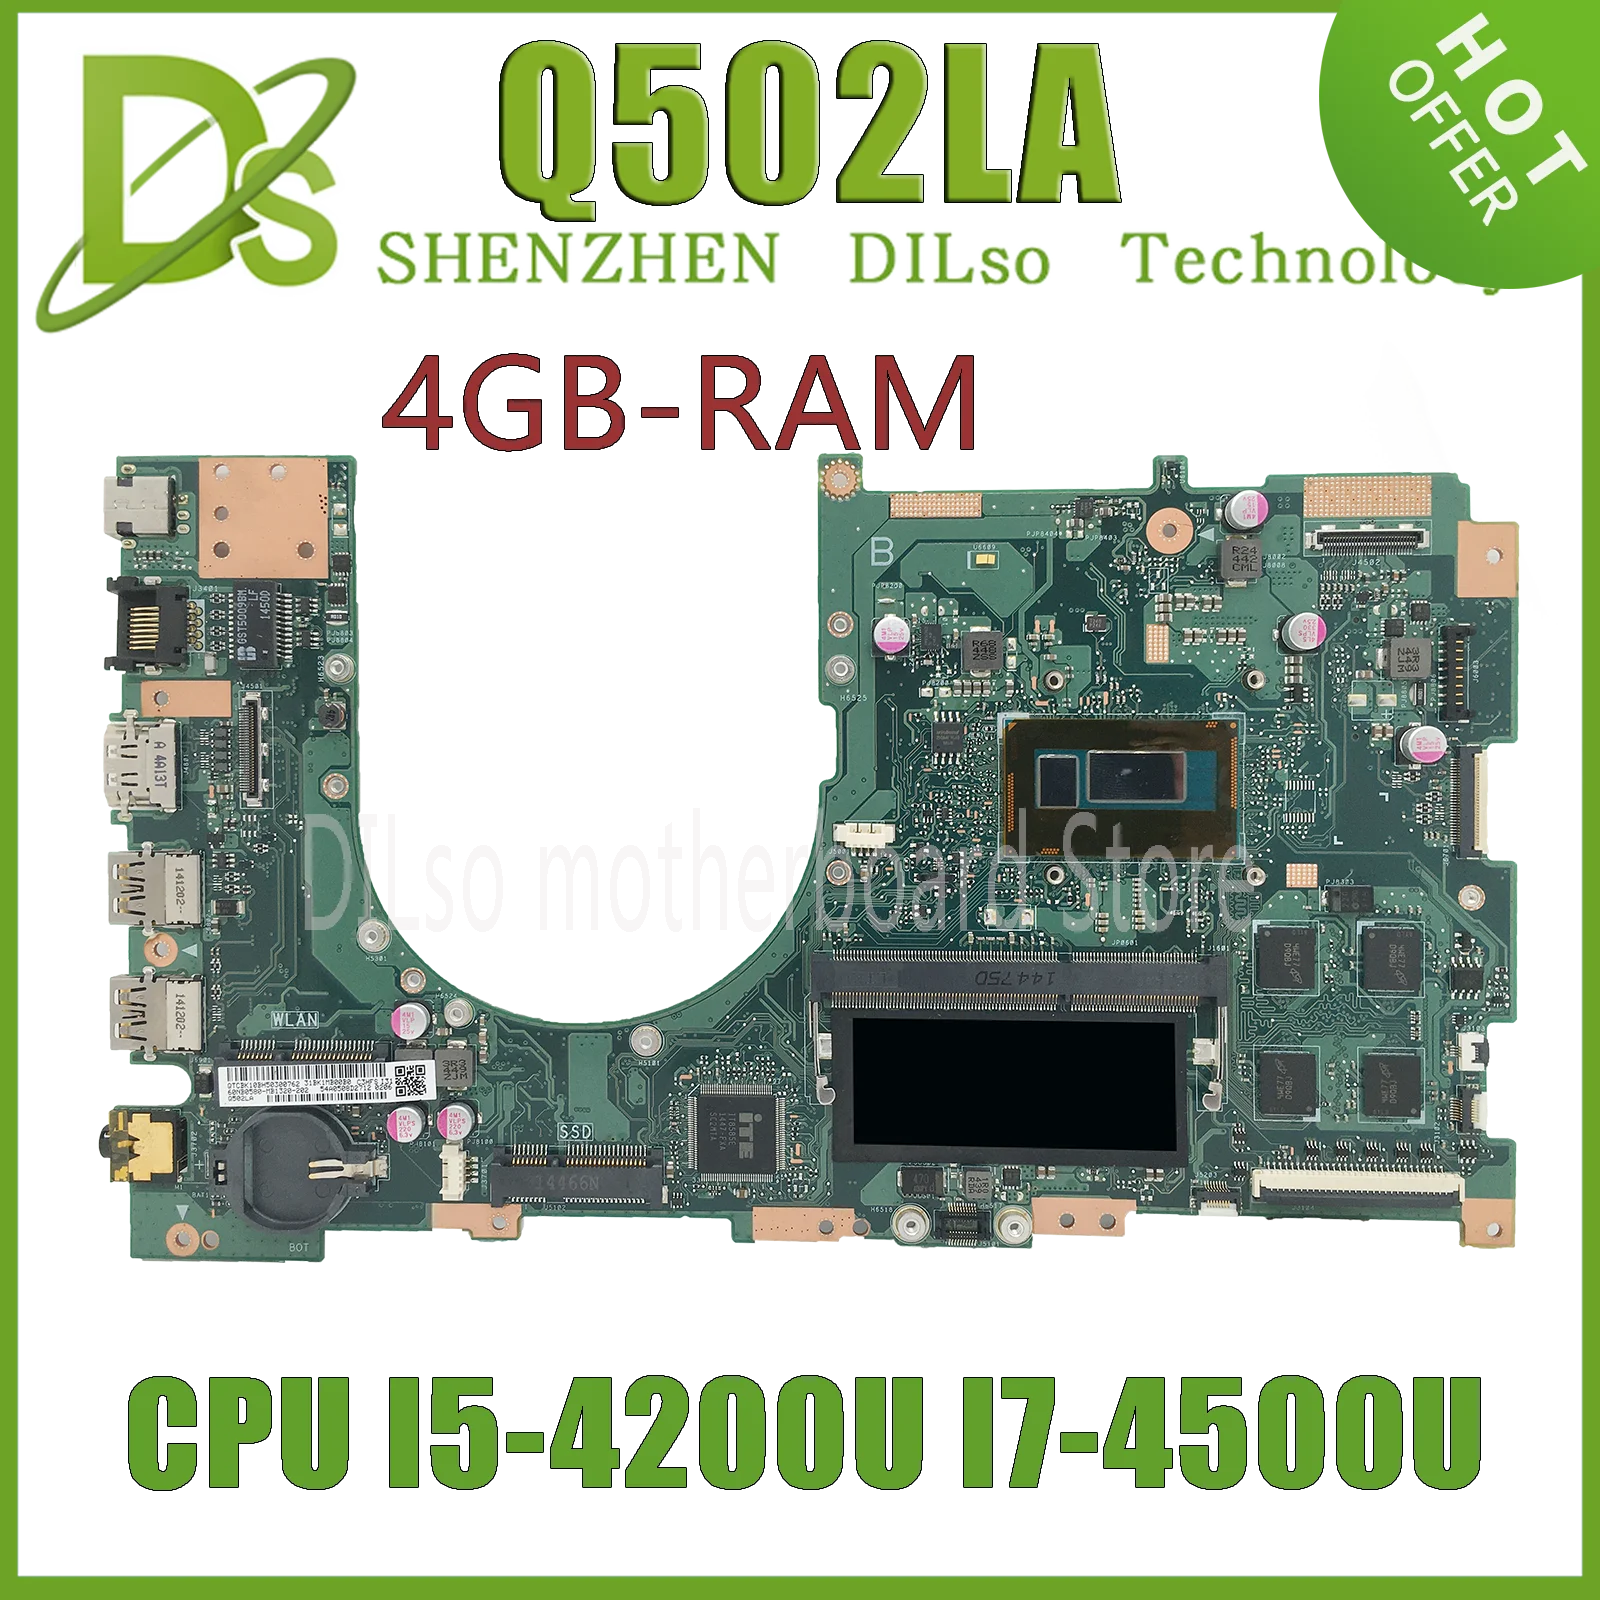 

KEFU Q502LA Mainboard For ASUS Q502LAB Q502LA Q502L Laptop Motherboard W/ I5-4200U I7-4500U 4GB-RAM 100% Working Well